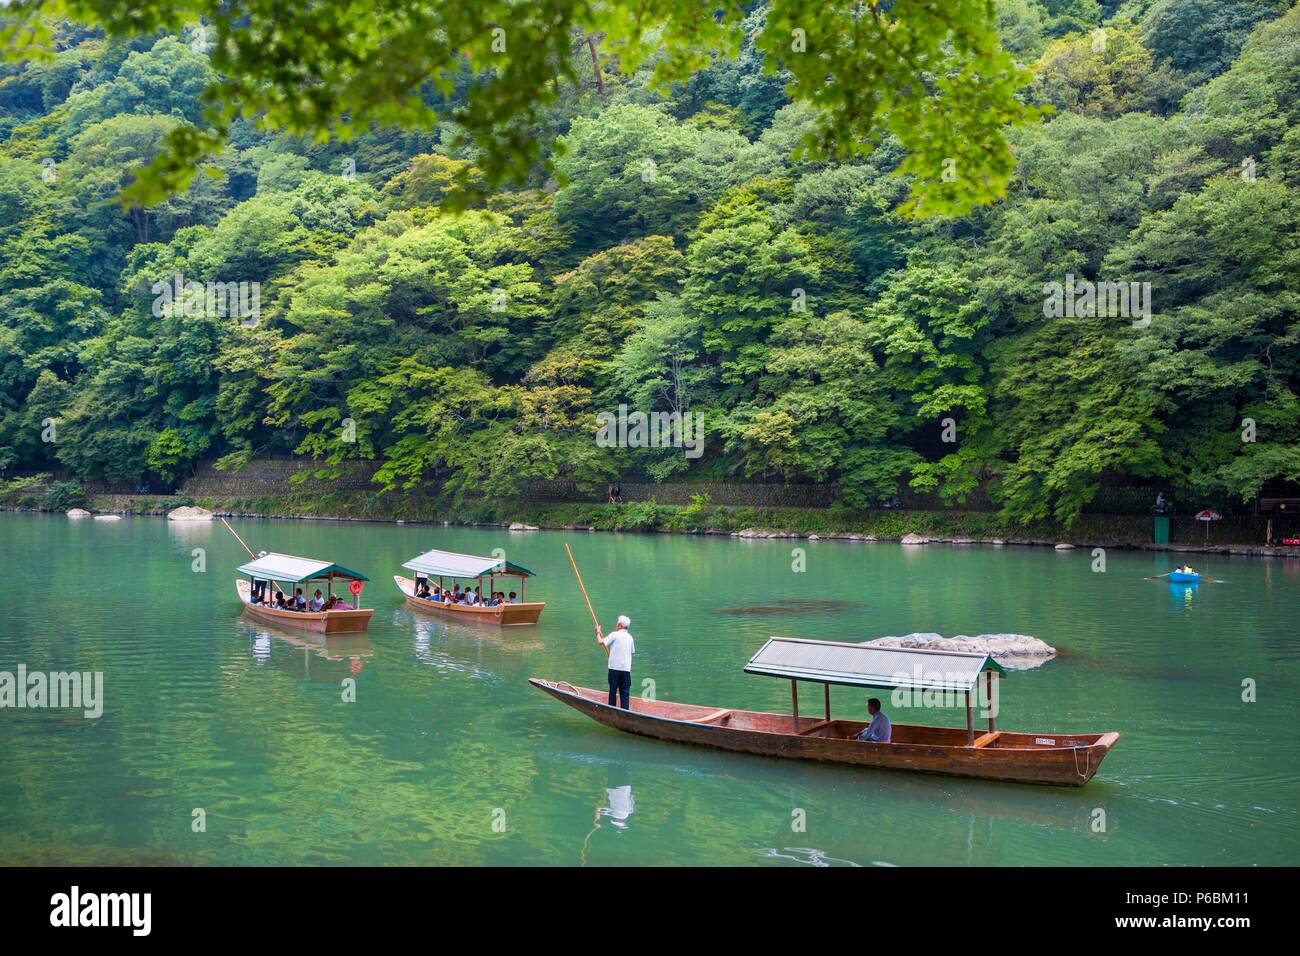 Le Japon, la ville de Kyoto, la montagne Arashiyama, Oi,voile Banque D'Images